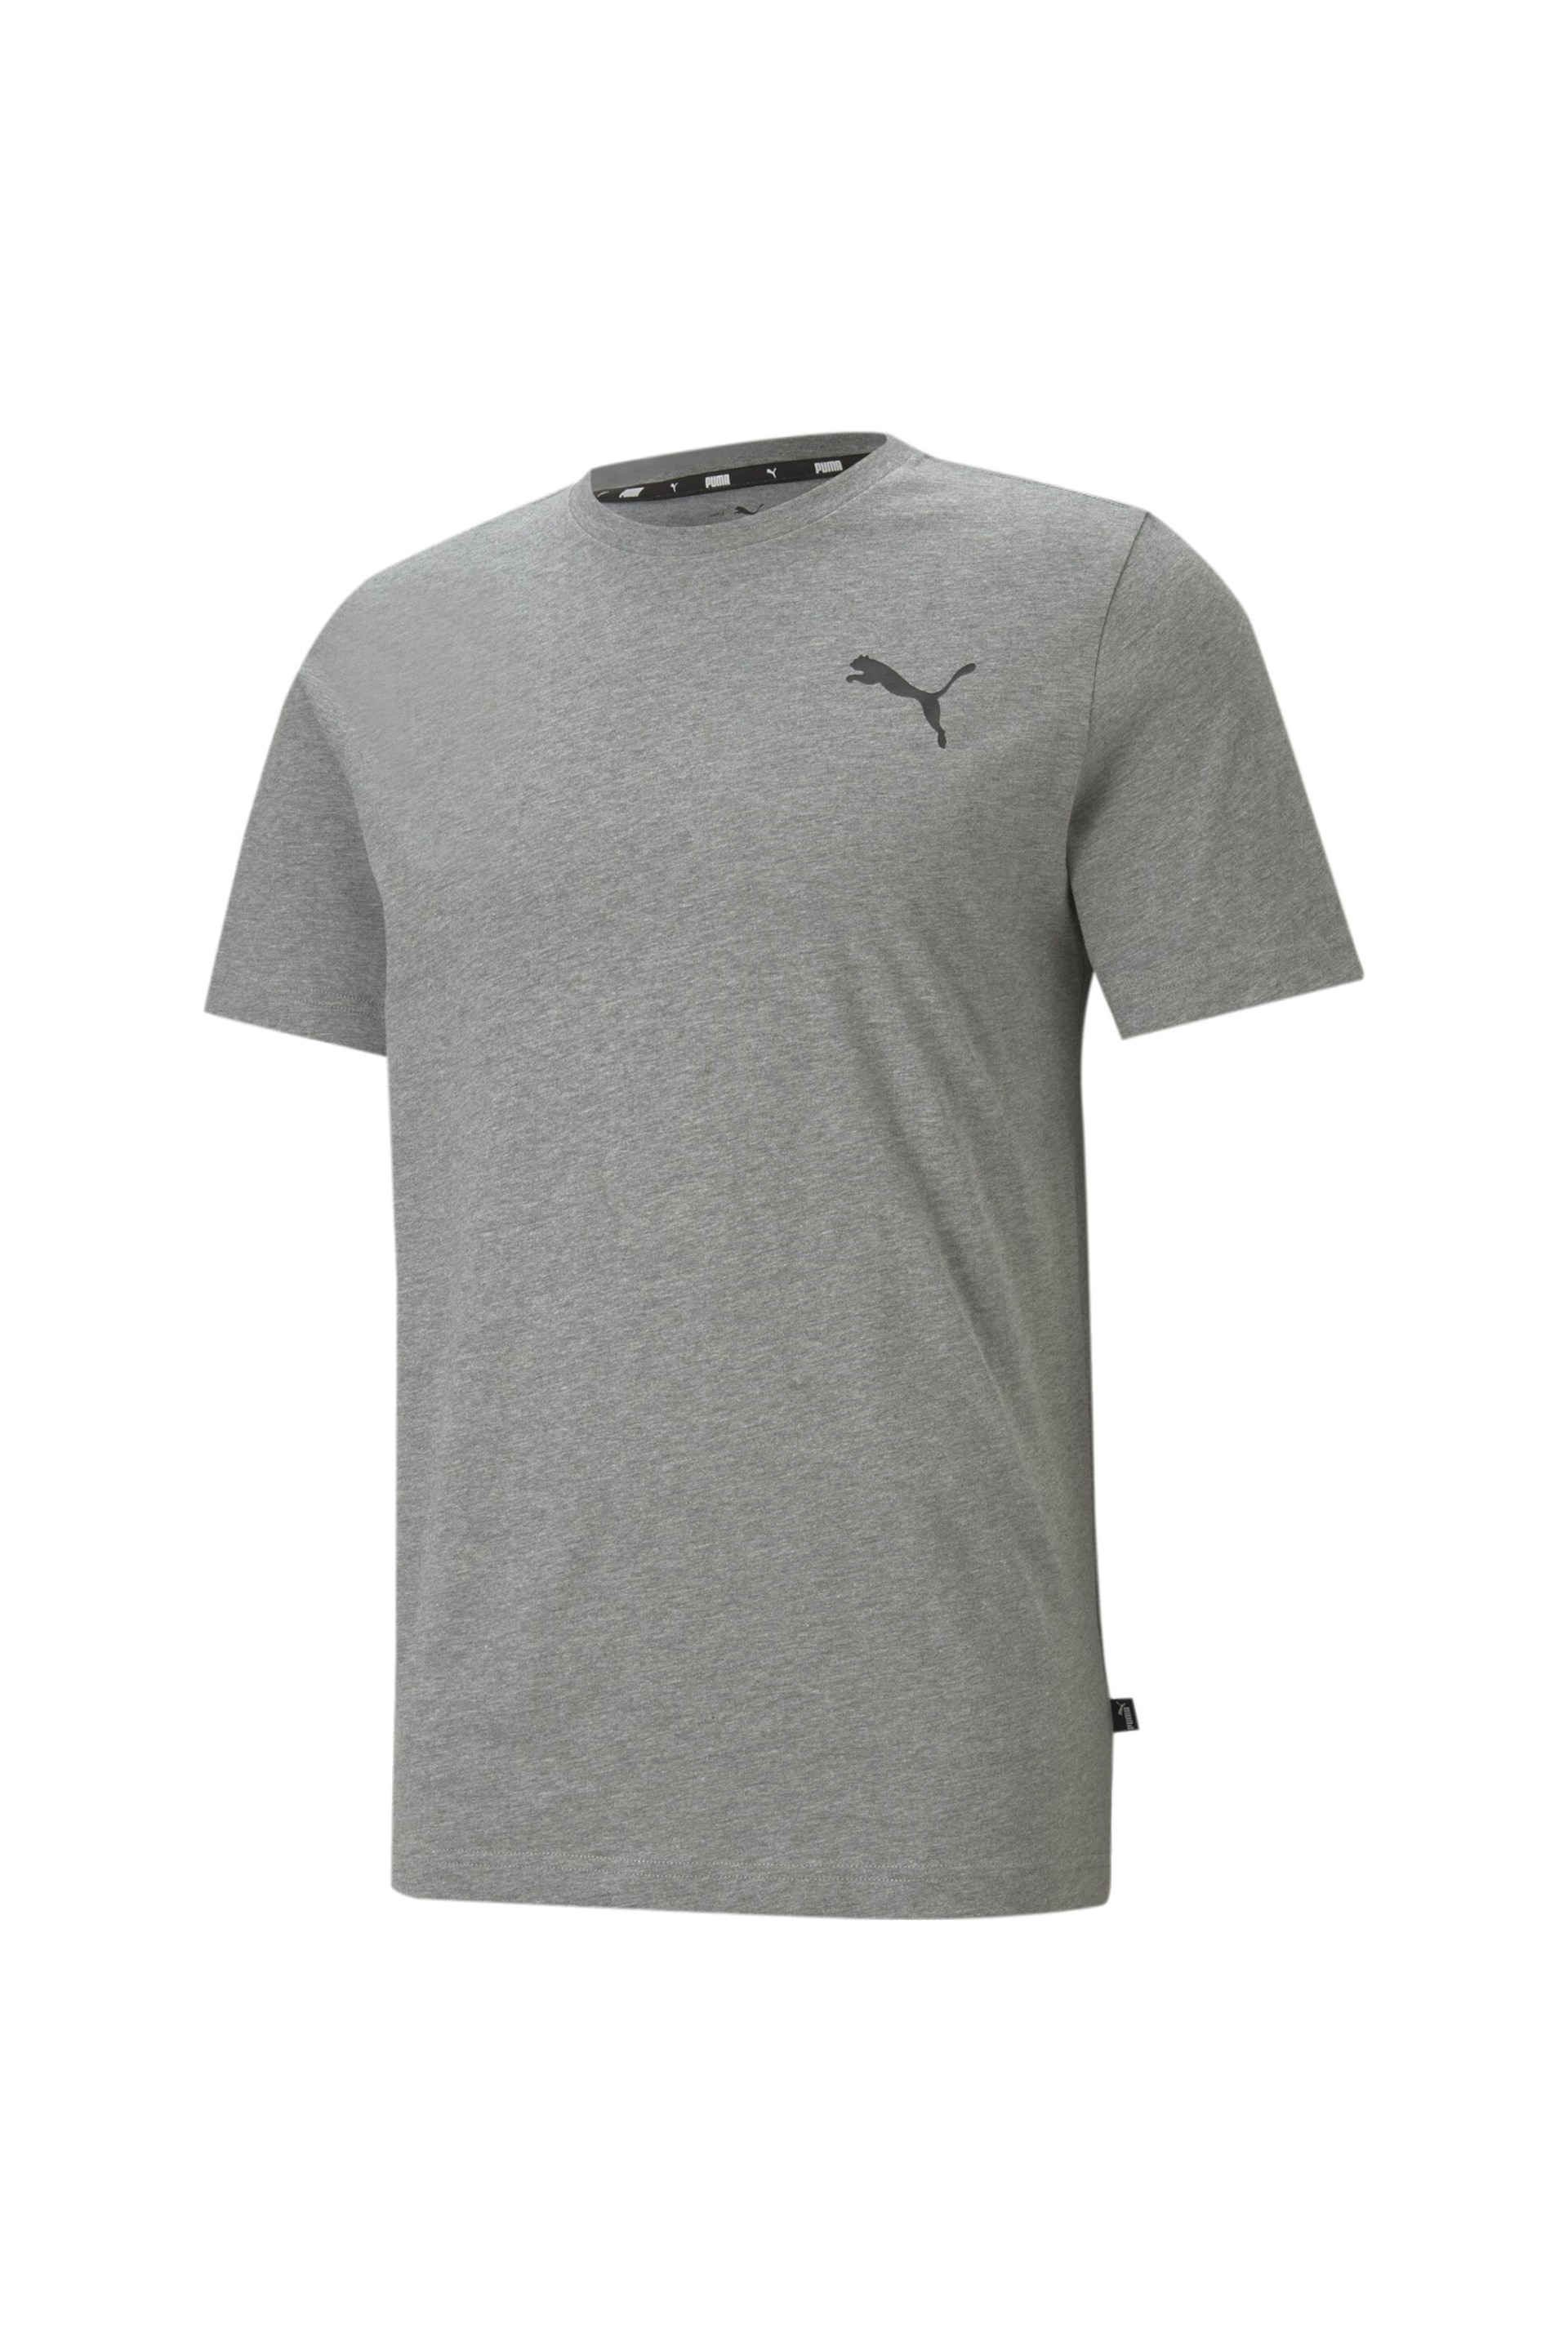 Puma Grey Mens Essentials Small Logo T-Shirt - Image 4 of 5